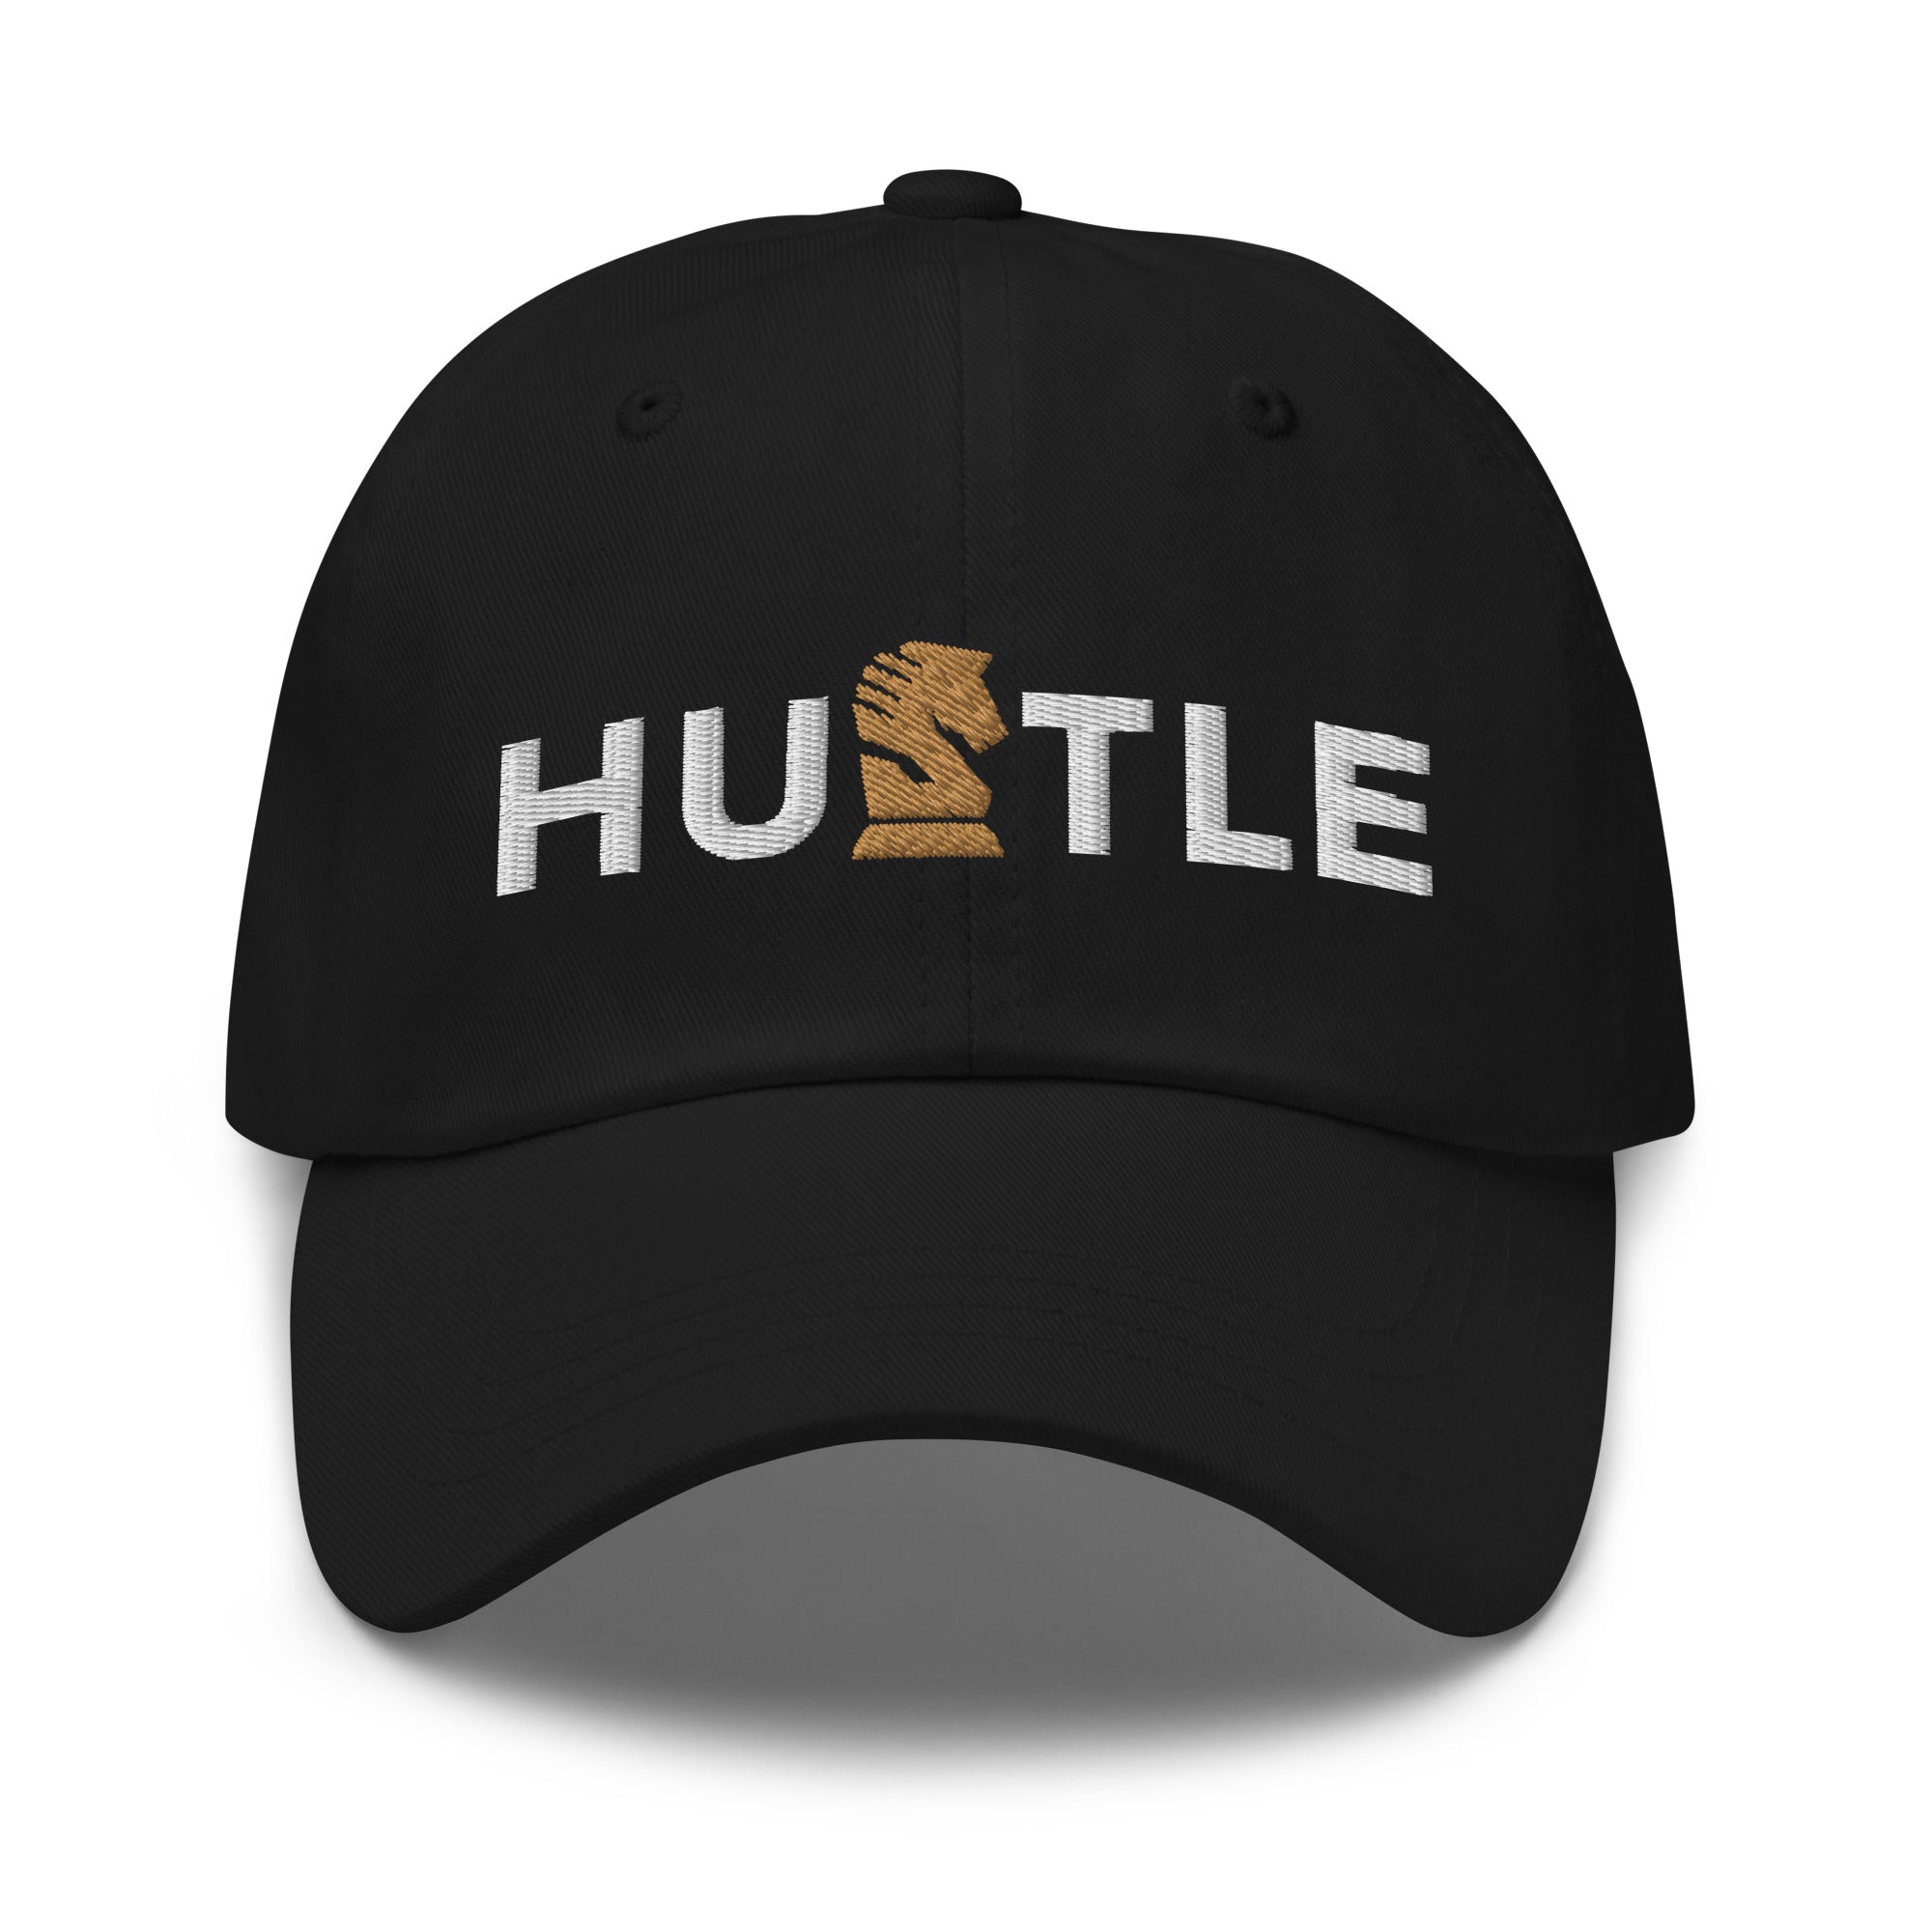 Hustle Dad hat